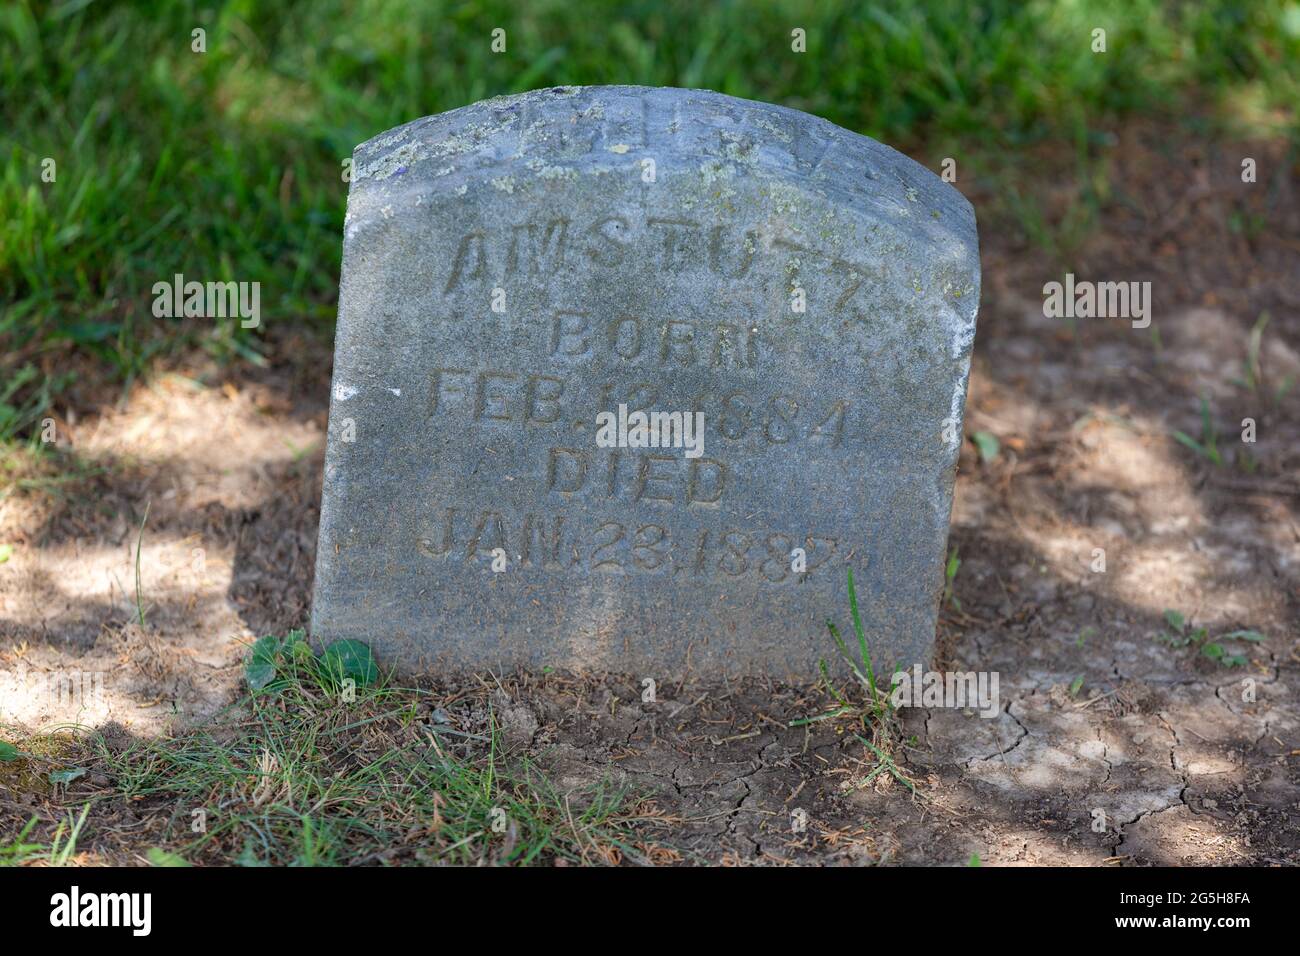 Das Grab von 1887 für ein Amstutz-Kind auf dem Yaggy-Friedhof in der Nähe von Grabill, Indiana, USA. Stockfoto